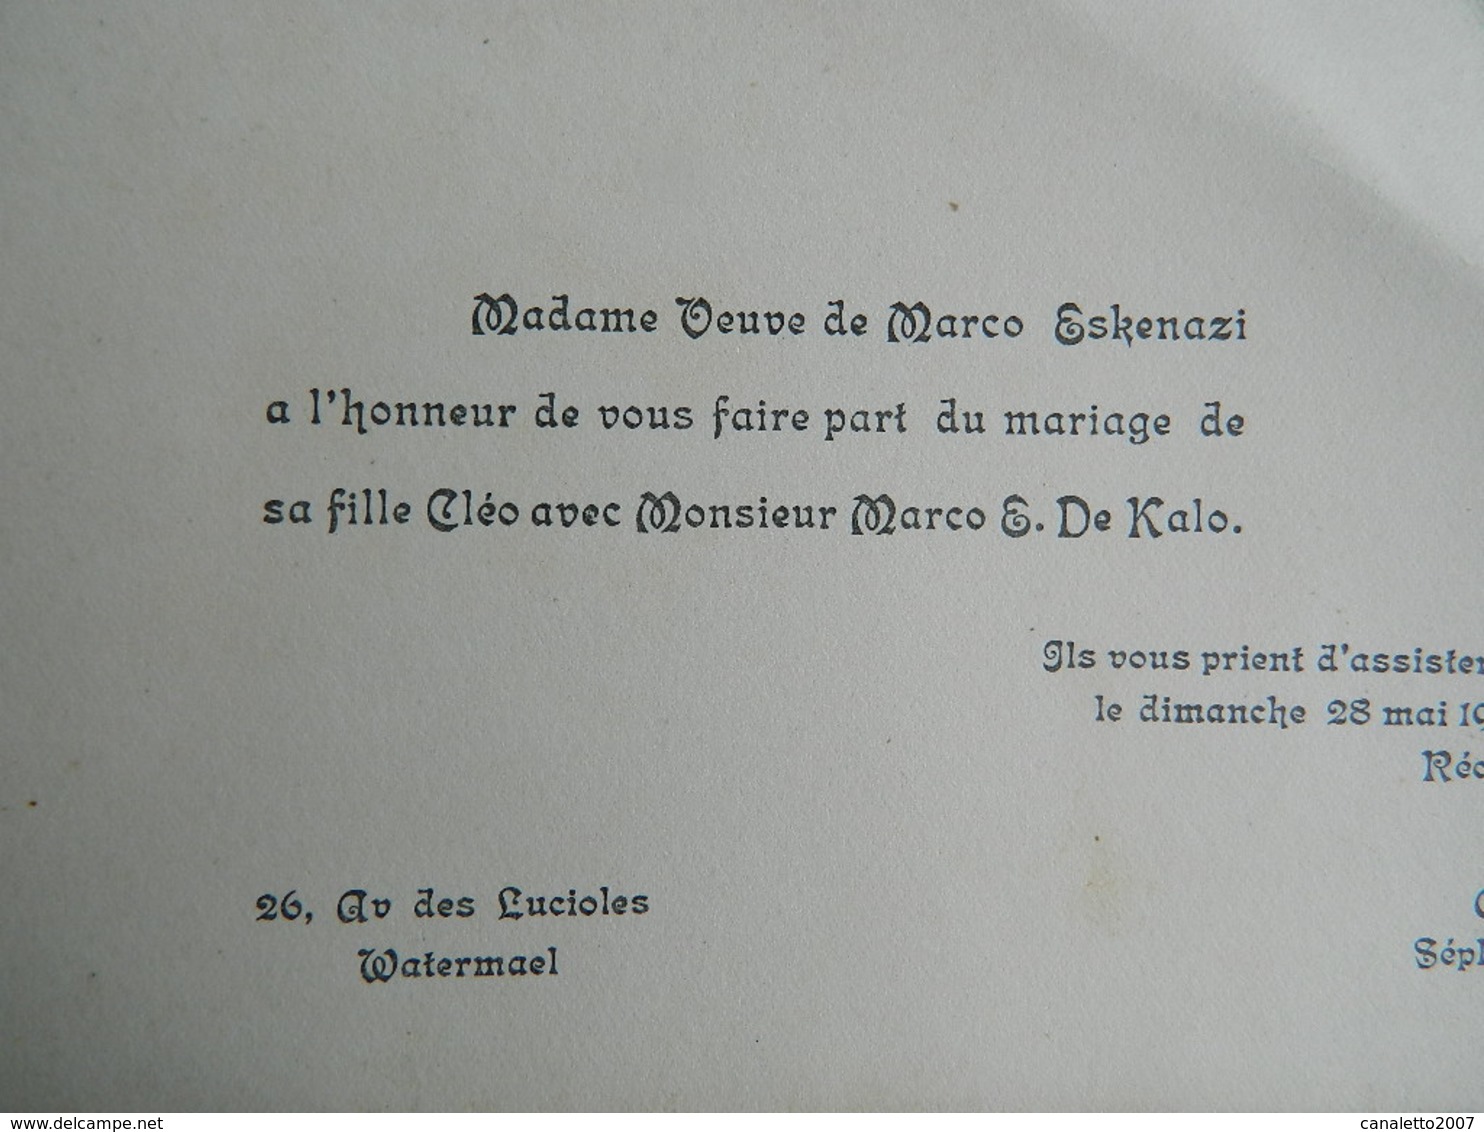 ST GILLES+WATERMAEL :FAIR PART DE MARIAGE DE 1939 DE CLEO ESKENAZI ET MARCO S.DE KALO - Mariage